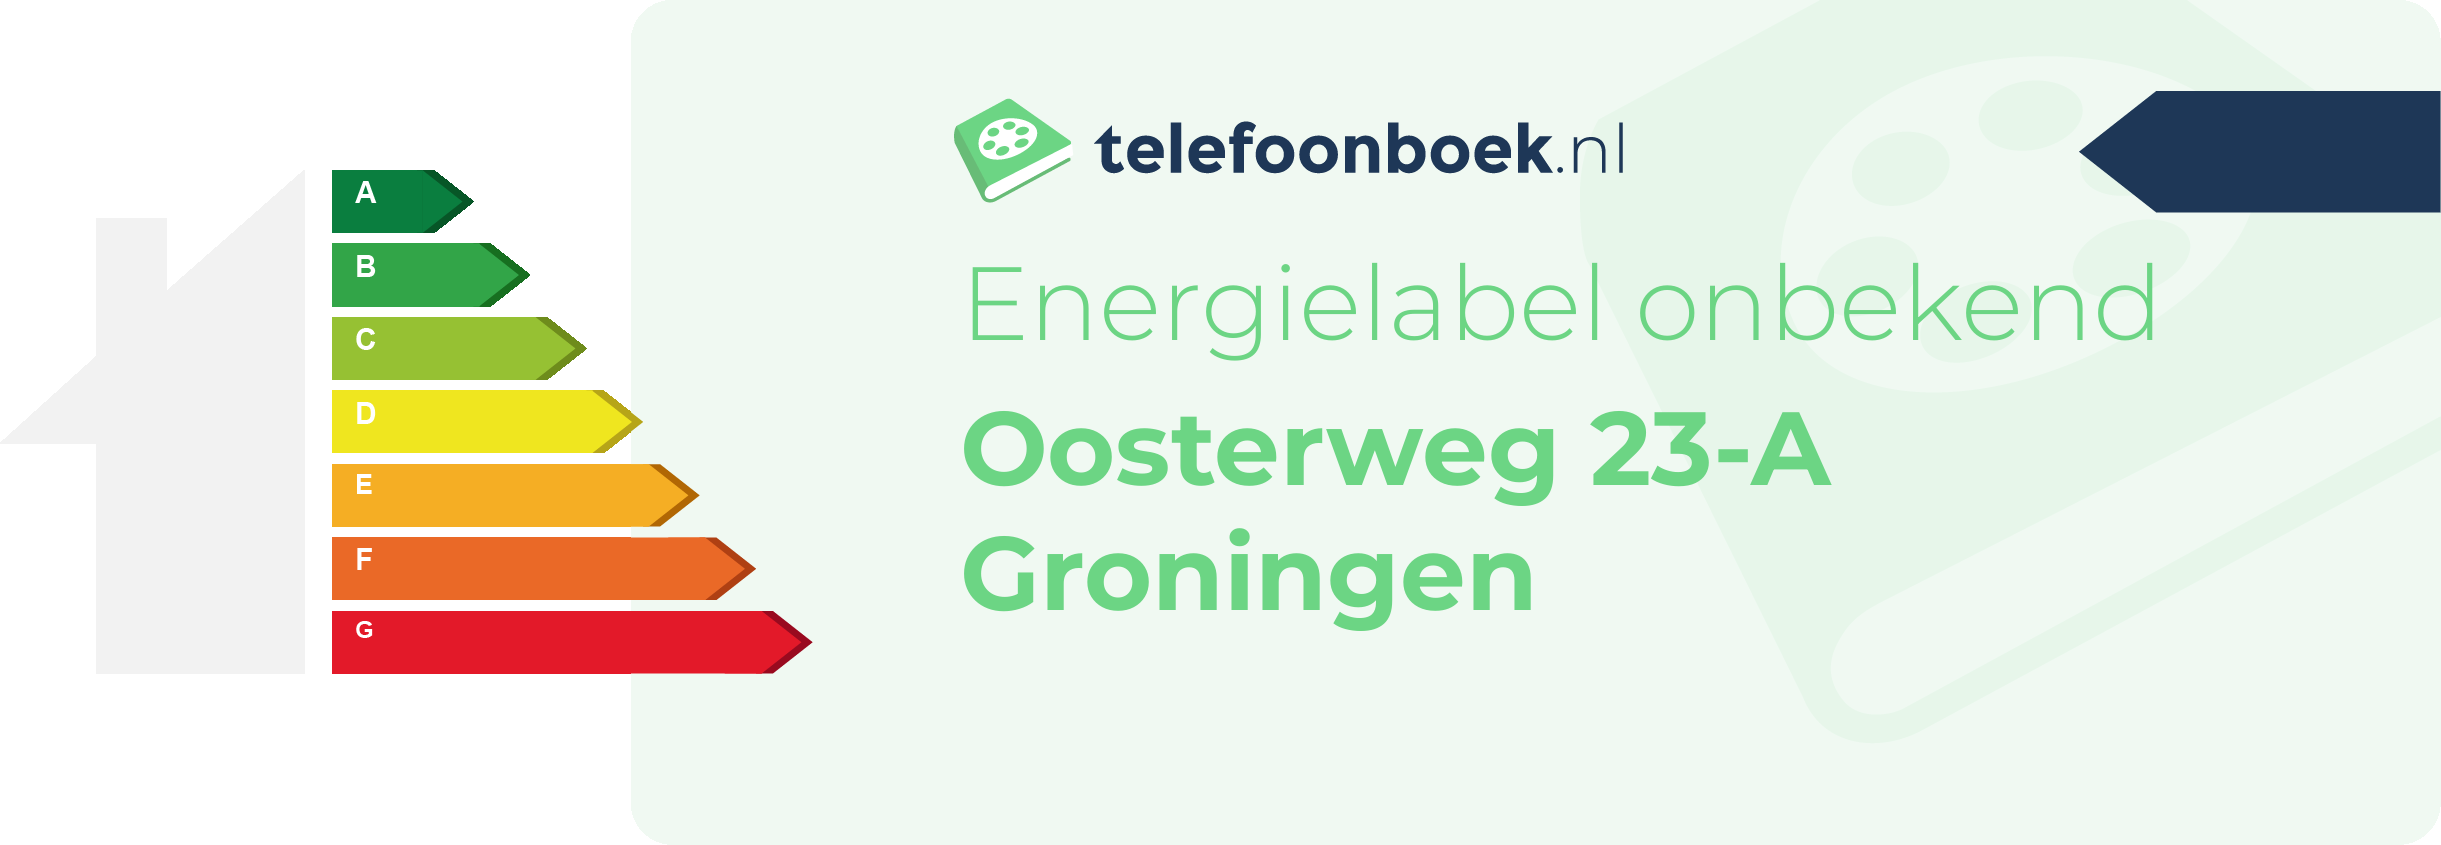 Energielabel Oosterweg 23-A Groningen